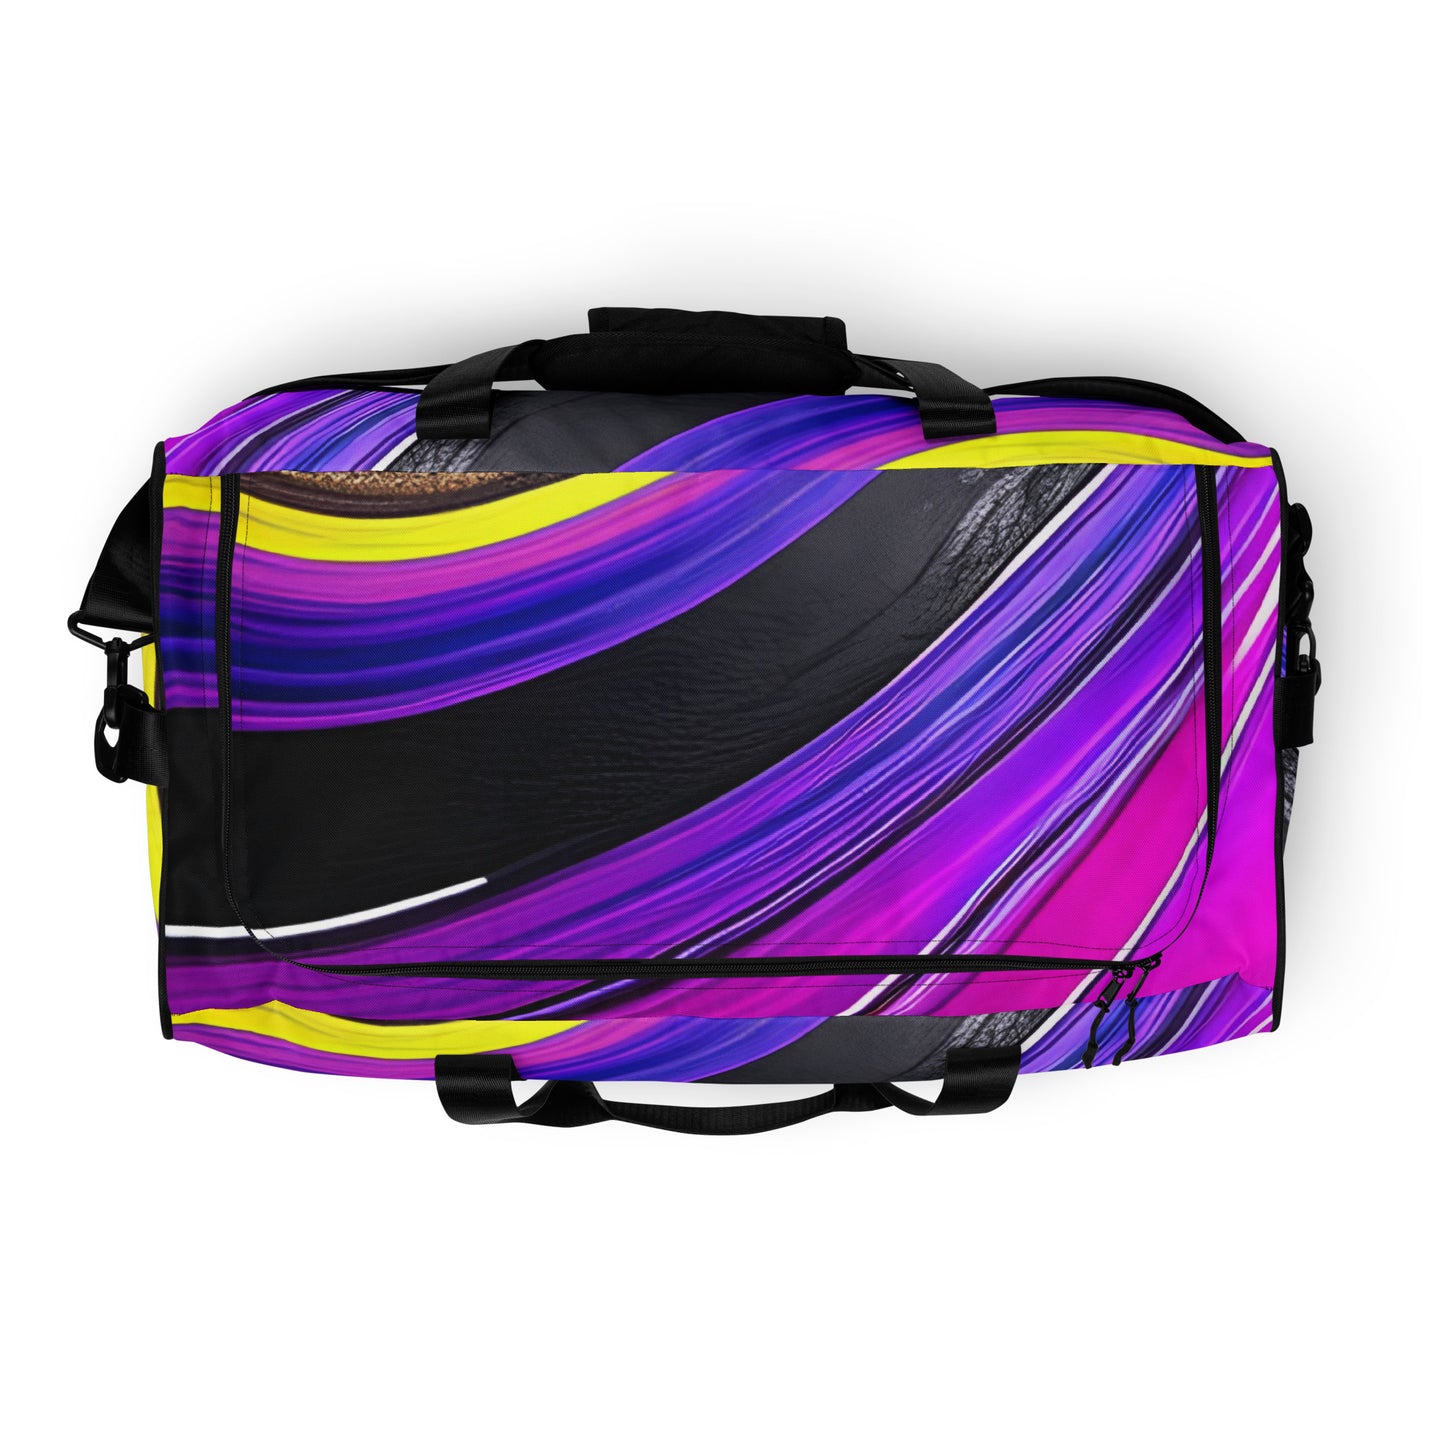 Duffle bag - Purple Paint Pour Duffle Bag Stylin' Spirit   